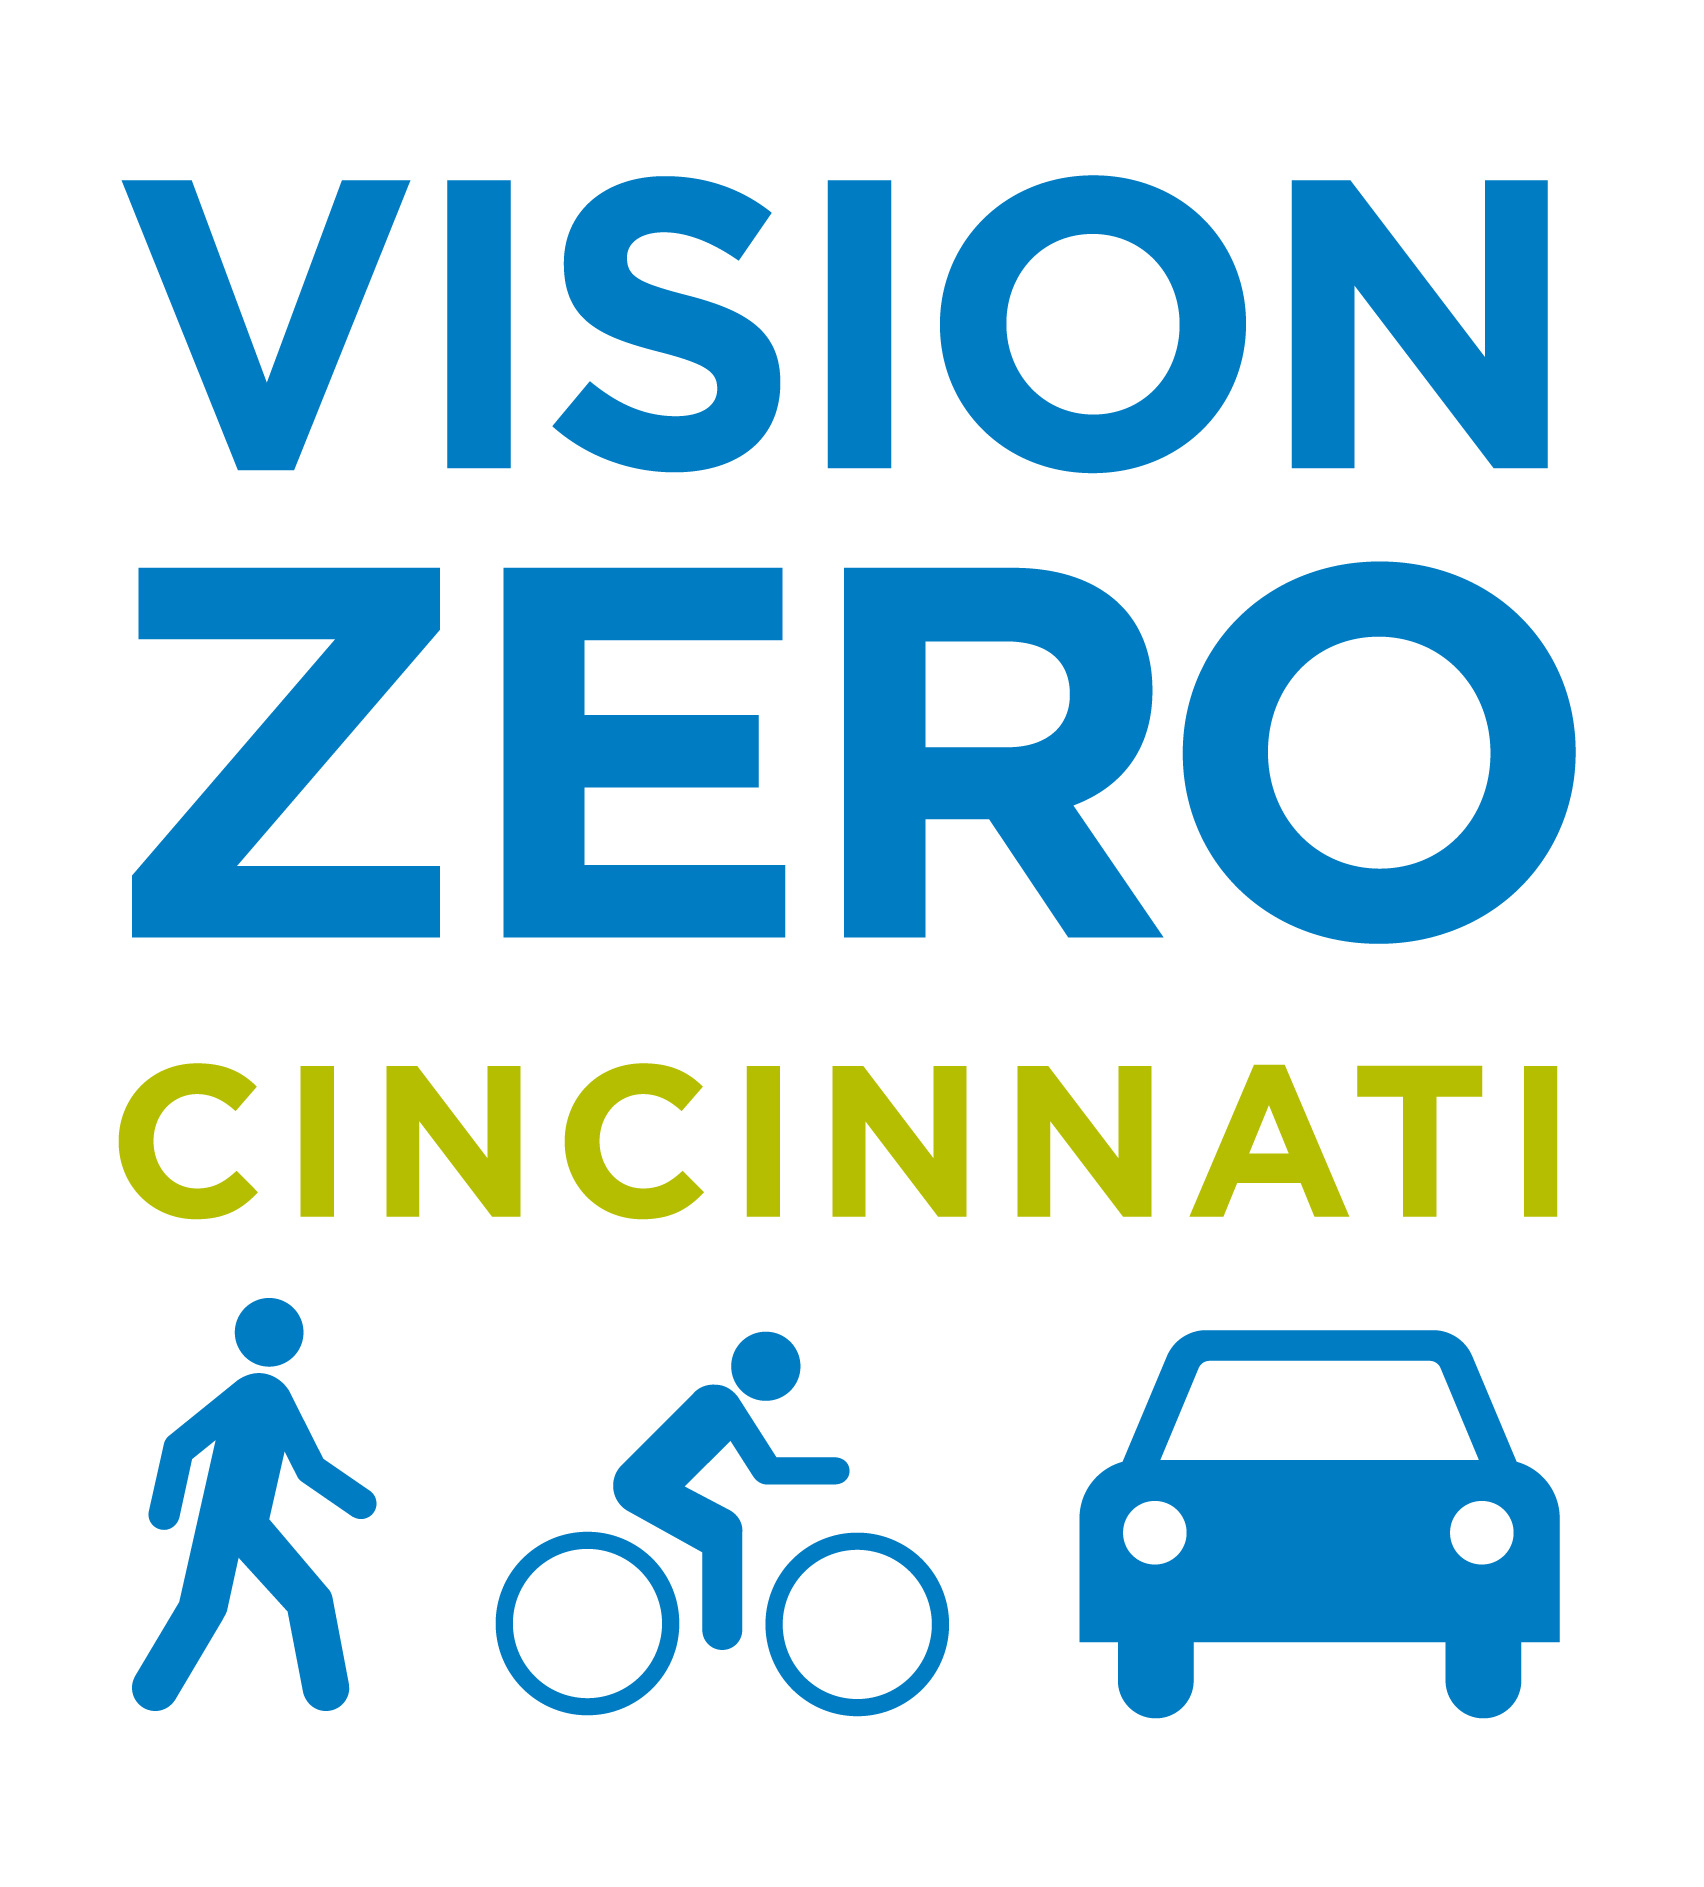 Vision Zero Cincinnati